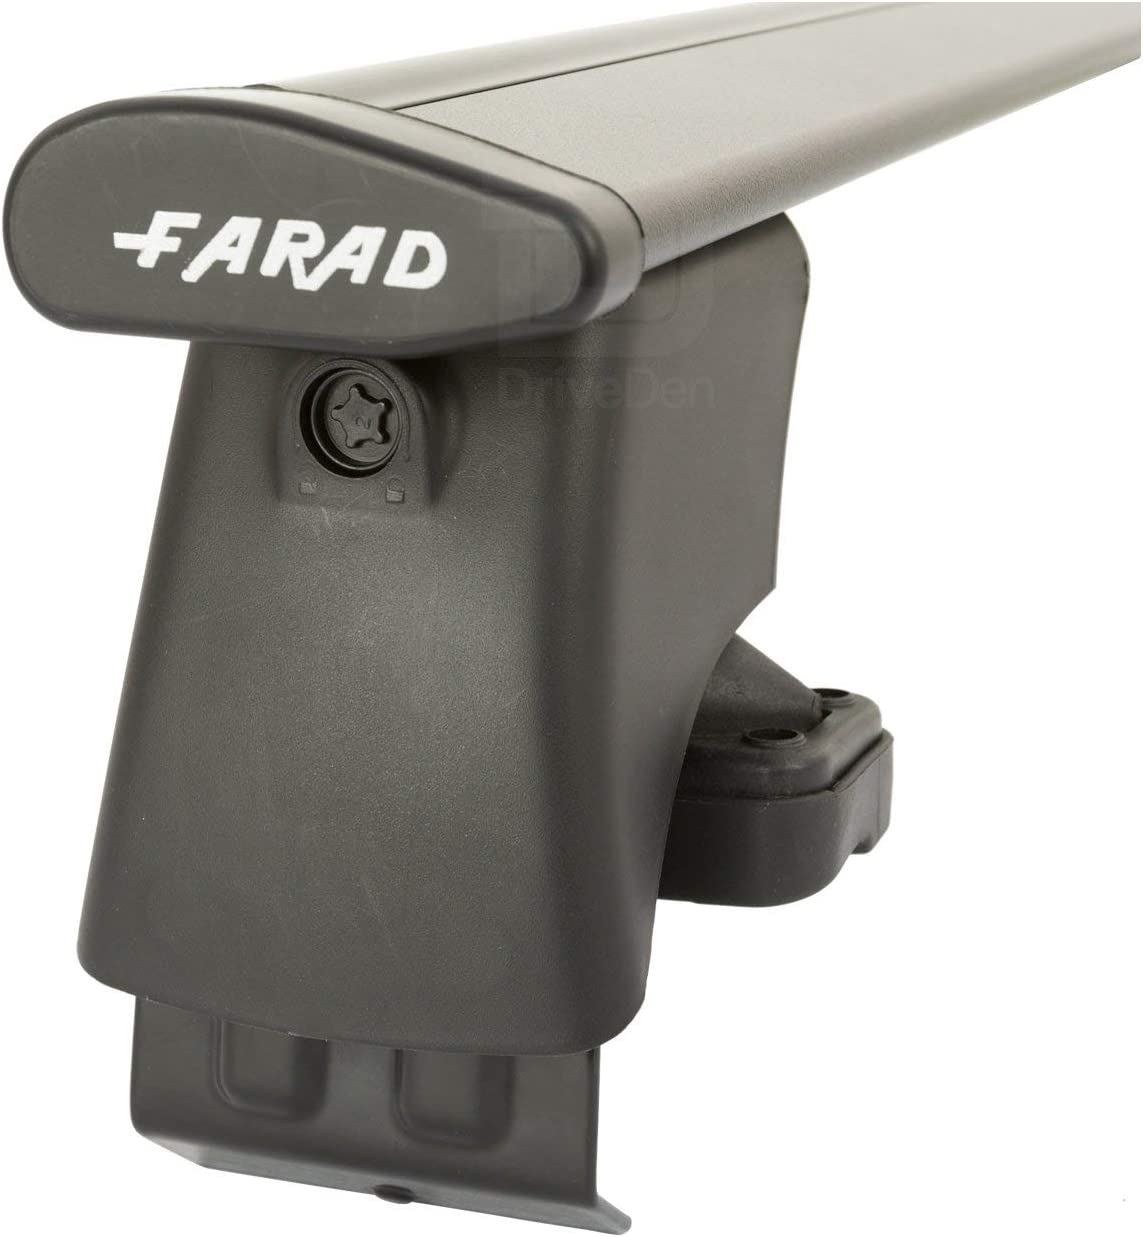 FARAD-Kit H2 per barre portatutto - Citroen C5 Aircross 2018> (senza corrimano)